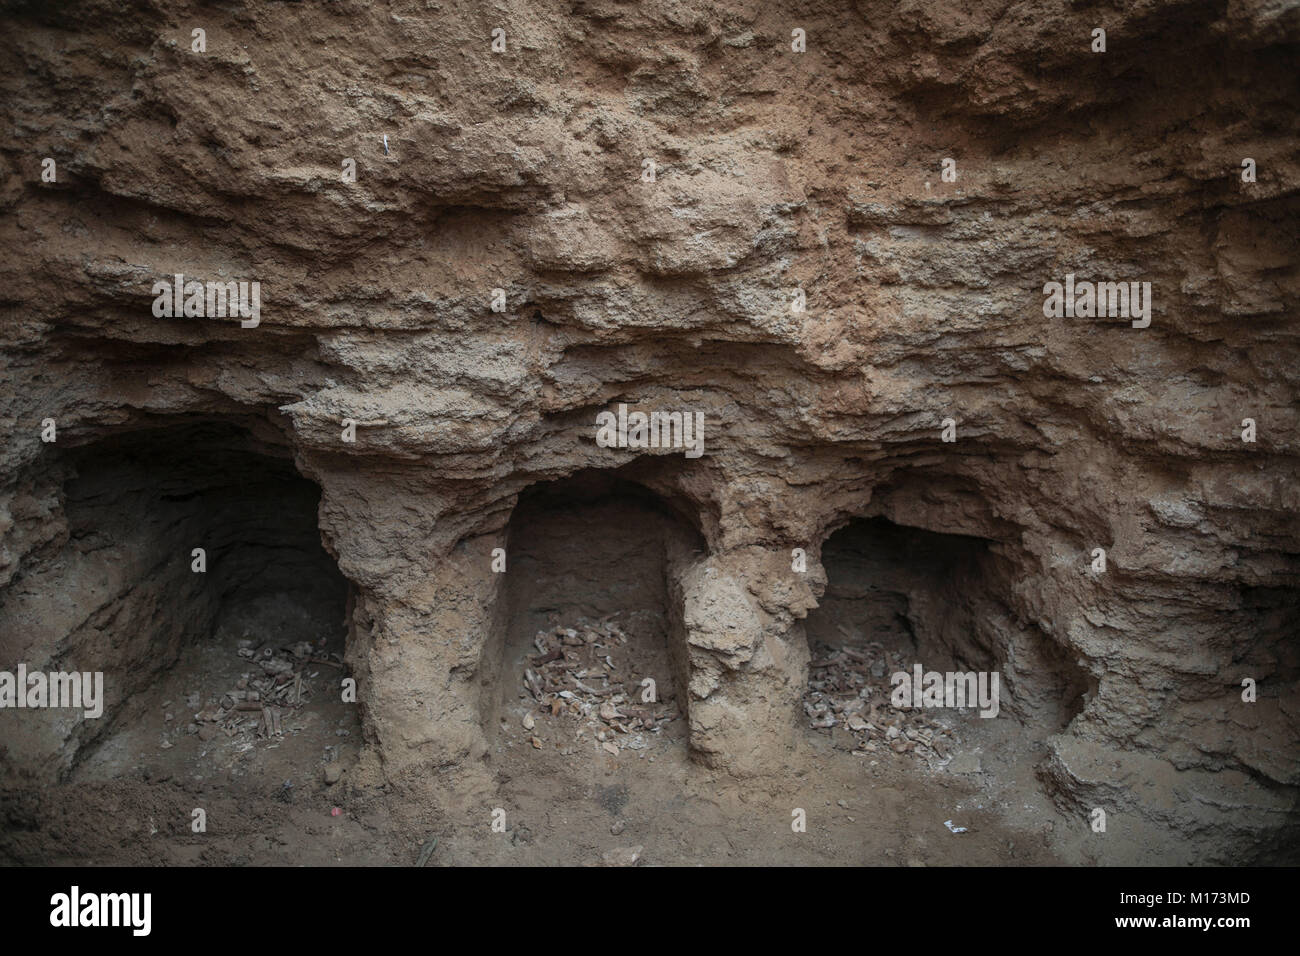 Beit Hanoun, nel nord della Striscia di Gaza City. 27 gennaio, 2018. Tre dei nove fori di sepoltura con ossa raffigurato in una tomba scoperta da Abdelkarim al-Kafarna, nel suo cortile di Beit Hanoun, nel nord della Striscia di Gaza City, 27 gennaio 2018. Gli archeologi nella Striscia di Gaza si dicono convinti che è di circa duemila anni, risalente ad epoca romana, dove la striscia di Gaza è stato parte di sconfinati Impero Romano. Ulteriori prove devono essere eseguite per determinare l'età esatta. Credito: Wissam Nassar/dpa/Alamy Live News Foto Stock